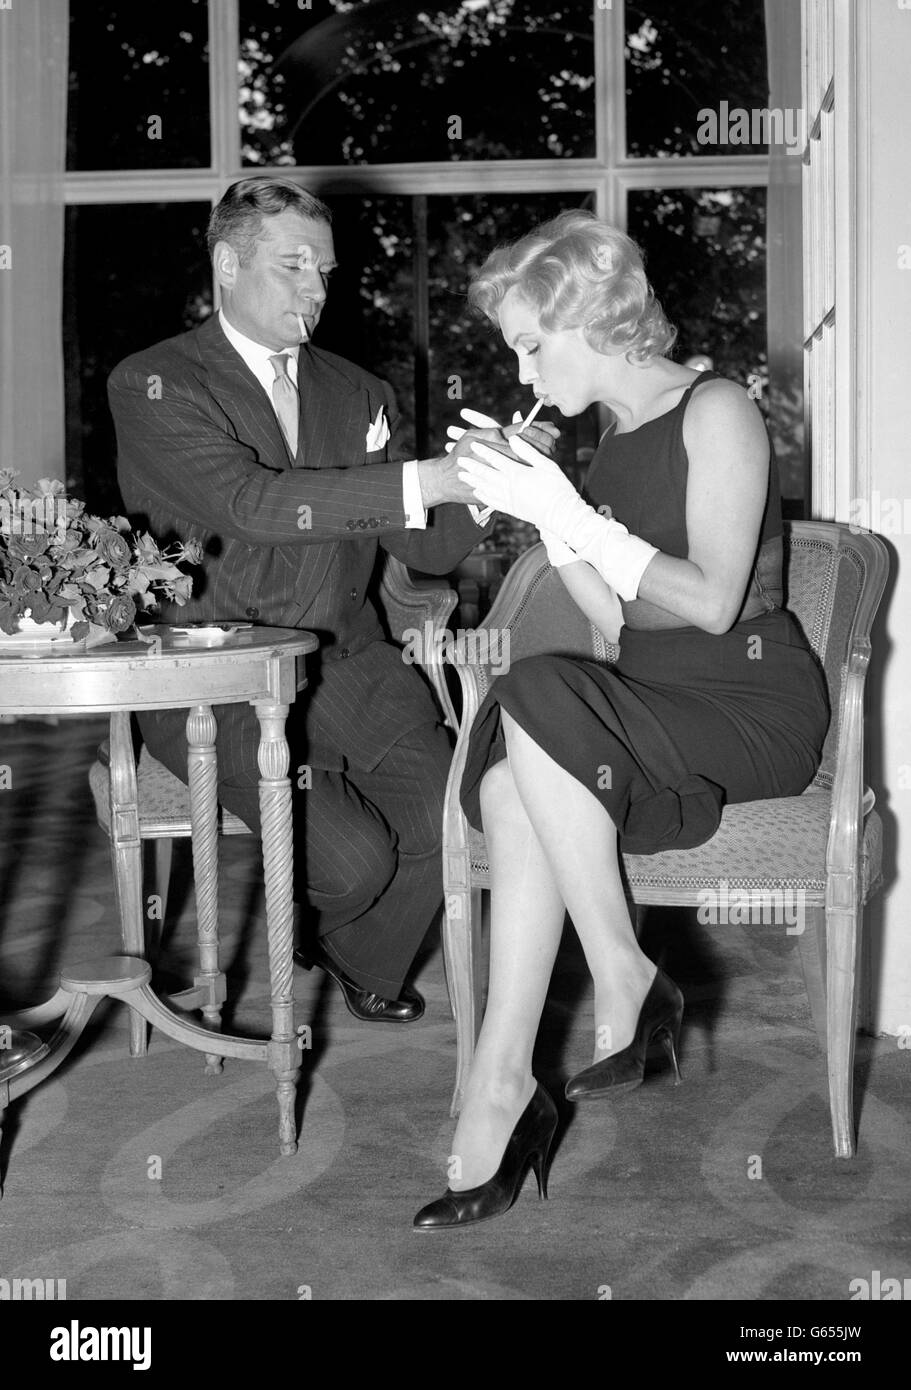 L'actrice du film hollywoodien Marilyn Monroe se penche pour obtenir une lumière pour sa cigarette de sa nouvelle co-star, Sir Laurence Olivier, en Grande-Bretagne, lors d'une conférence de presse qu'elle a donnée à l'Hôtel Savoy, Strand. Banque D'Images